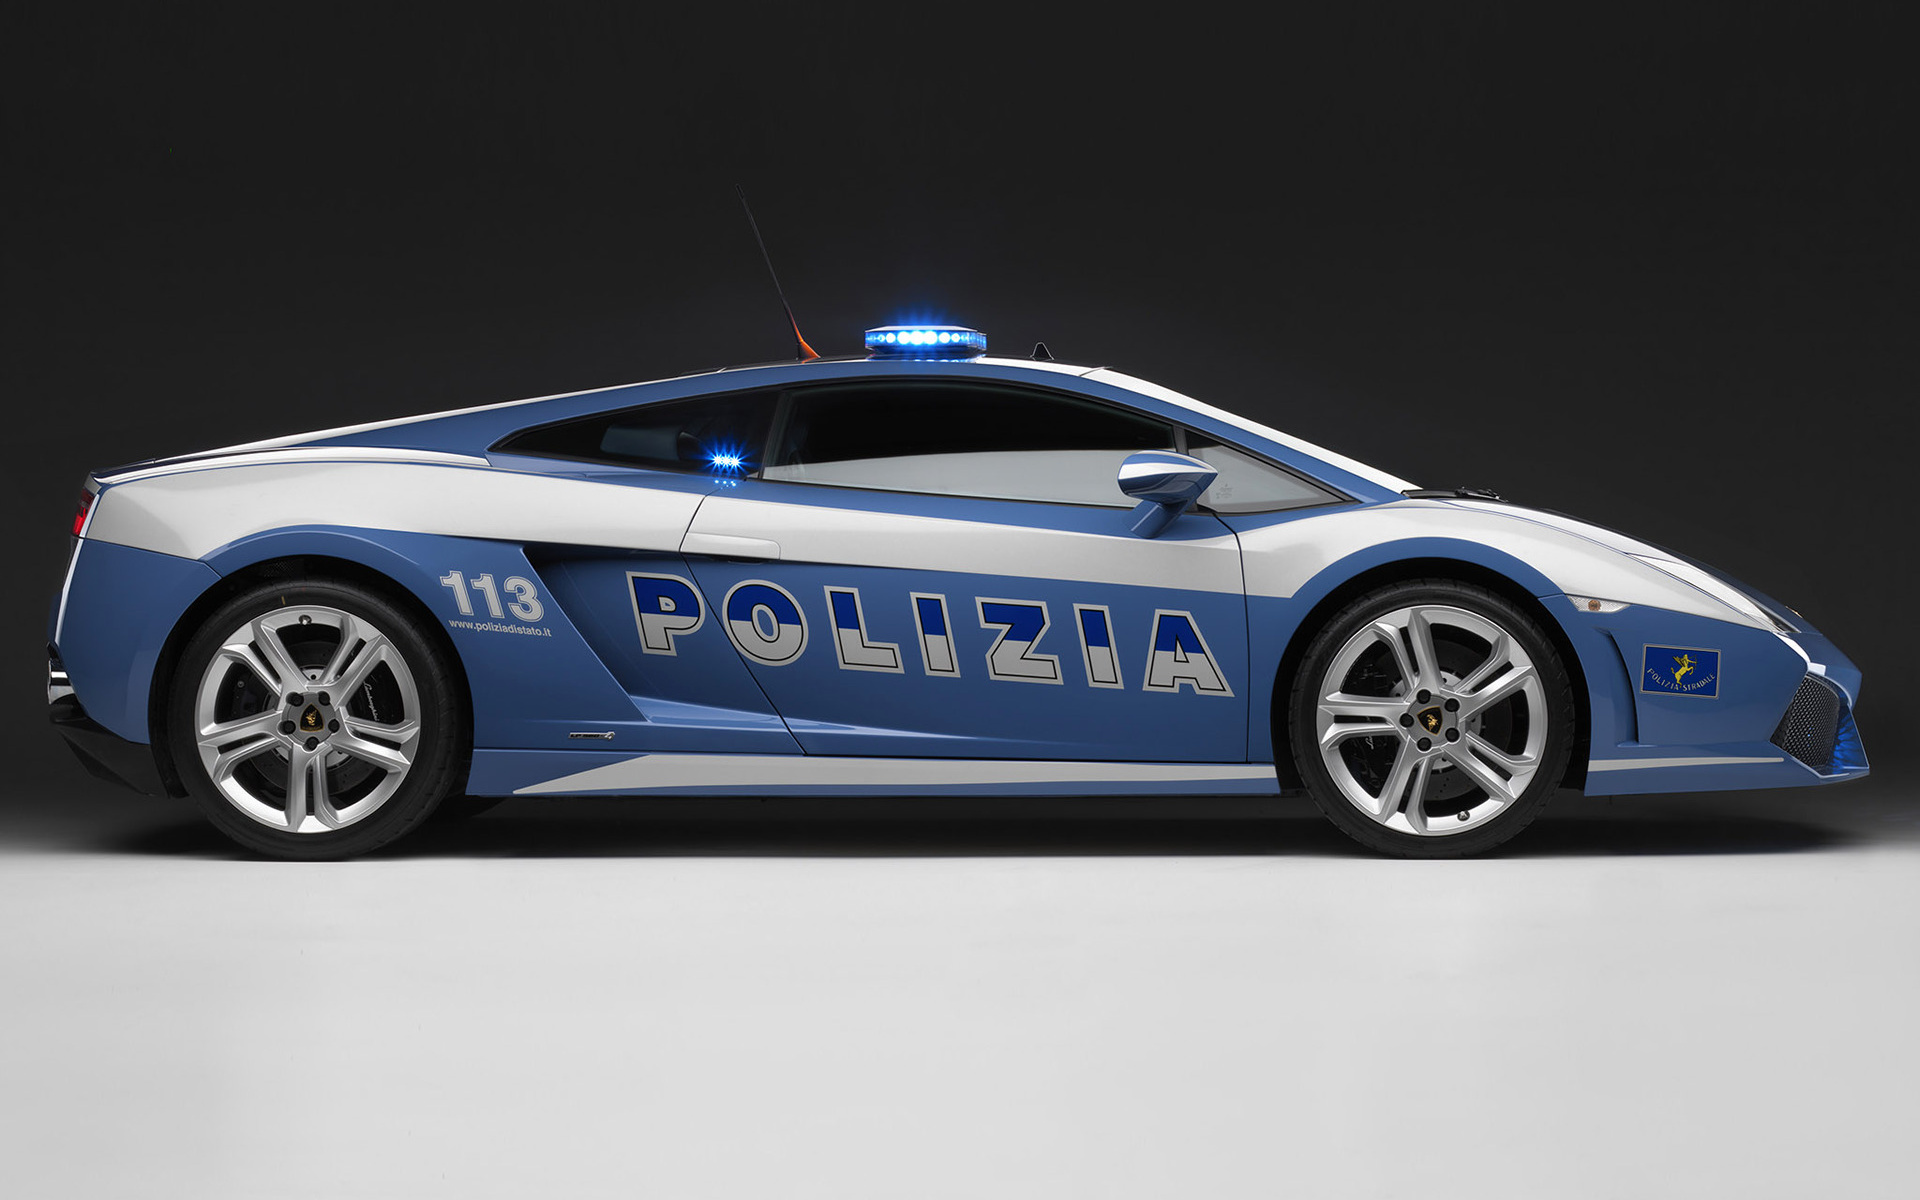 2008 Lamborghini Gallardo LP 560-4 Polizia - Duvar kağıdı #14924.